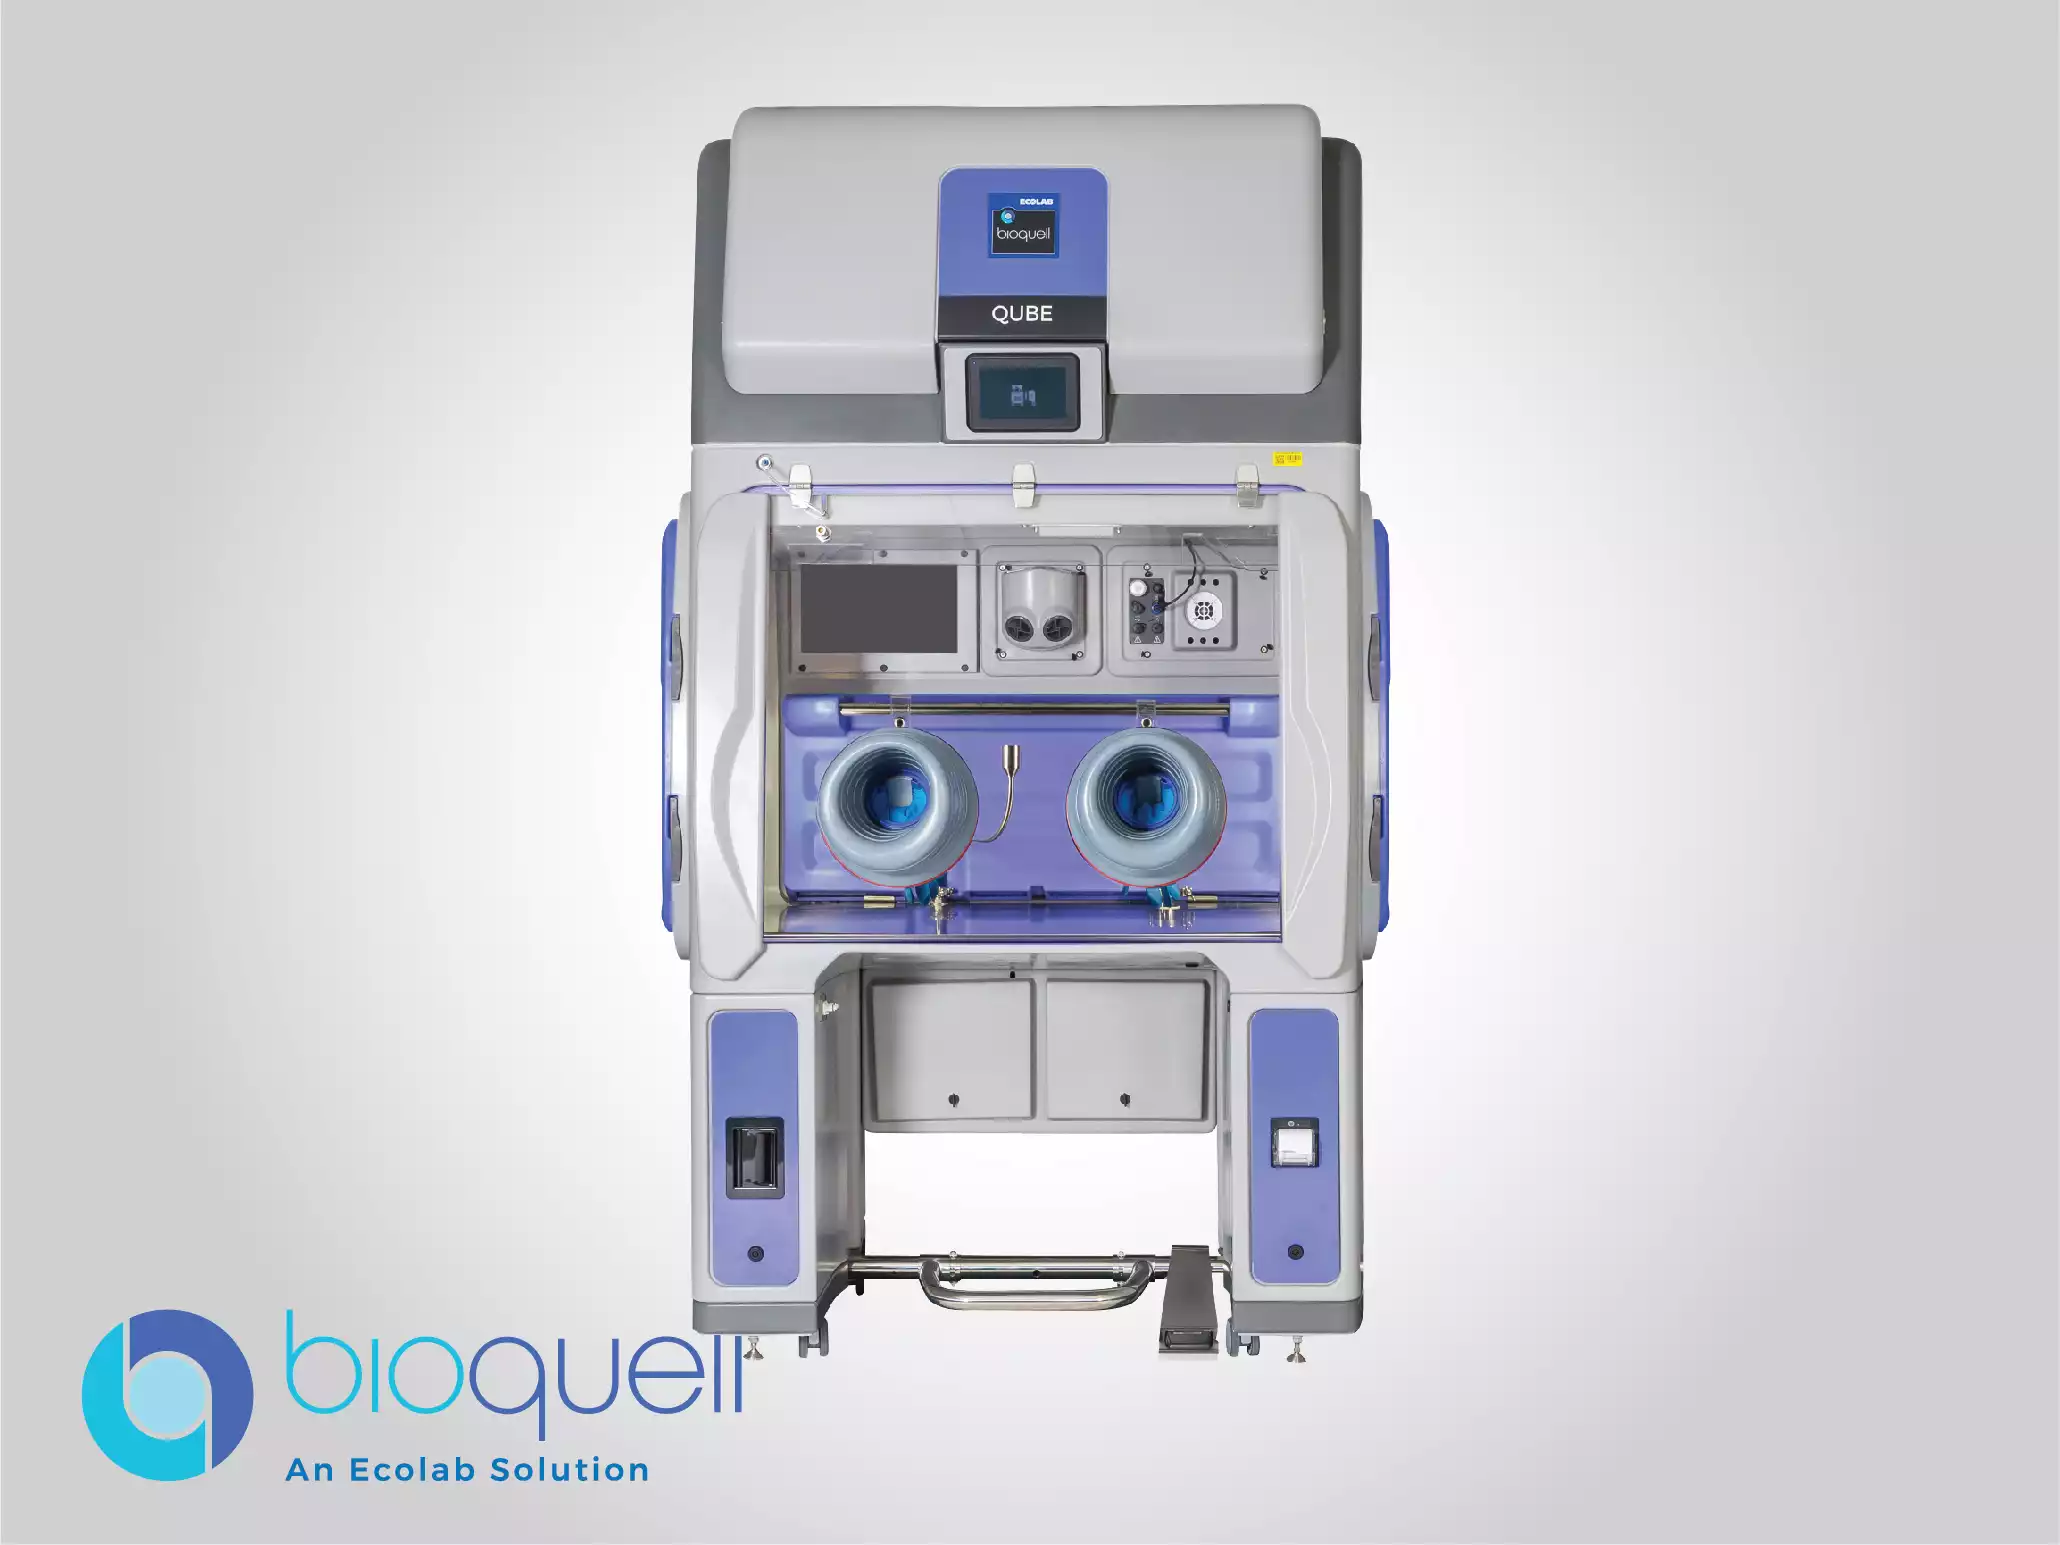 Bioquell Biodecontamination Systems